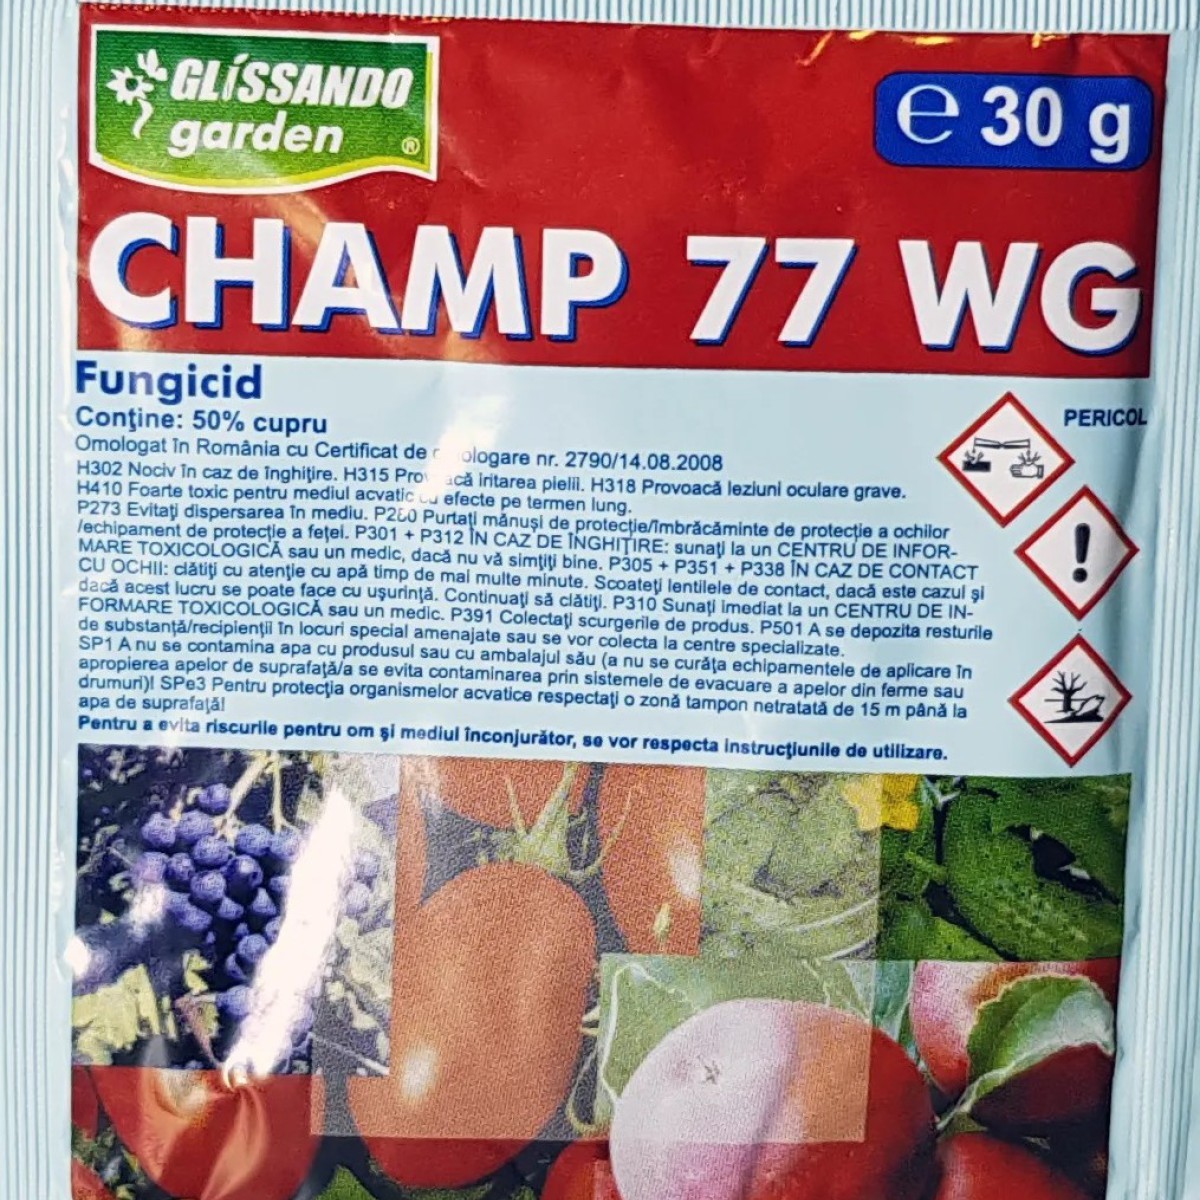 Champ 77 WG